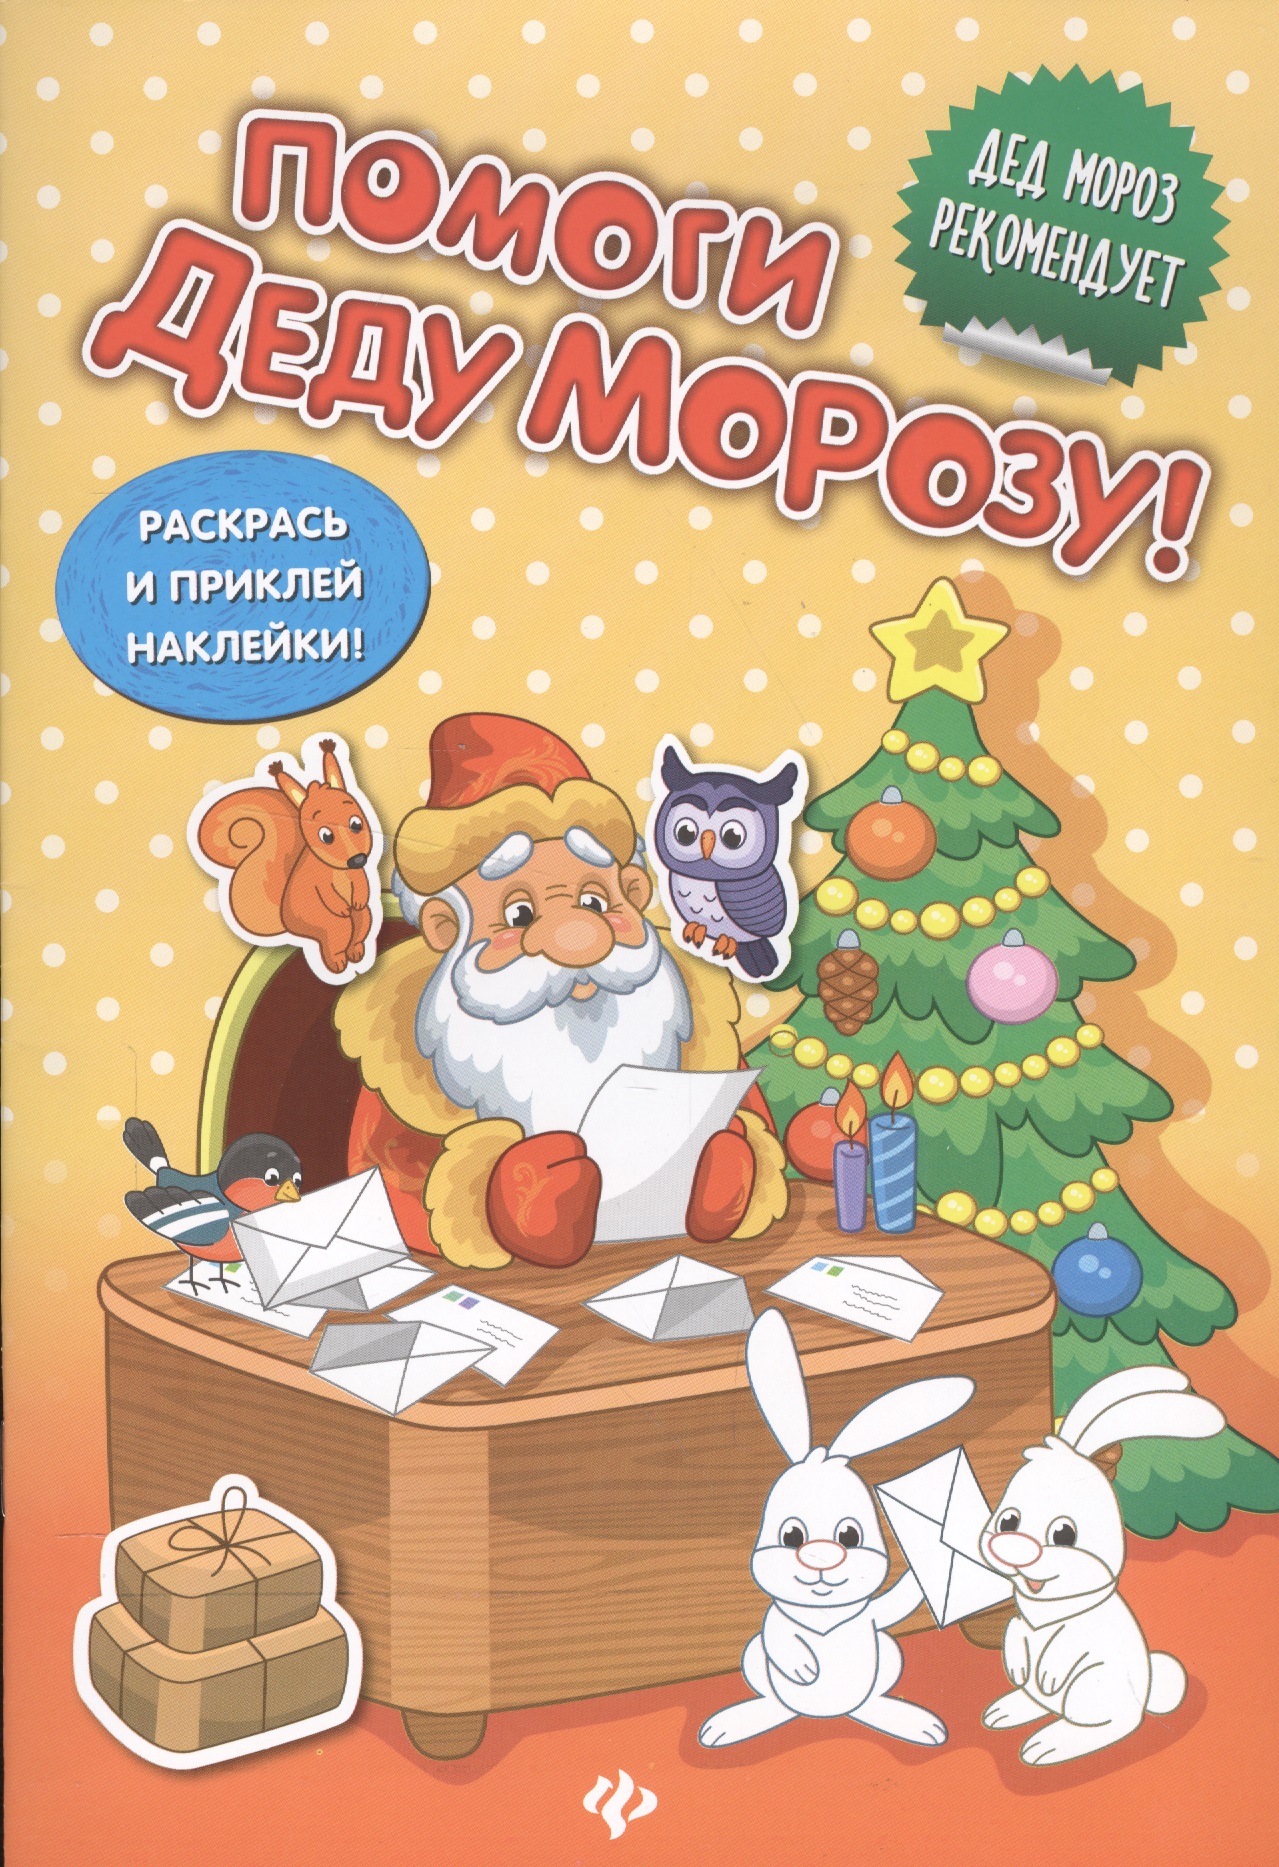 Помоги Деду Морозу!:развивающая книжка с наклейкам помоги деду морозу развивающая книжка с наклейкам